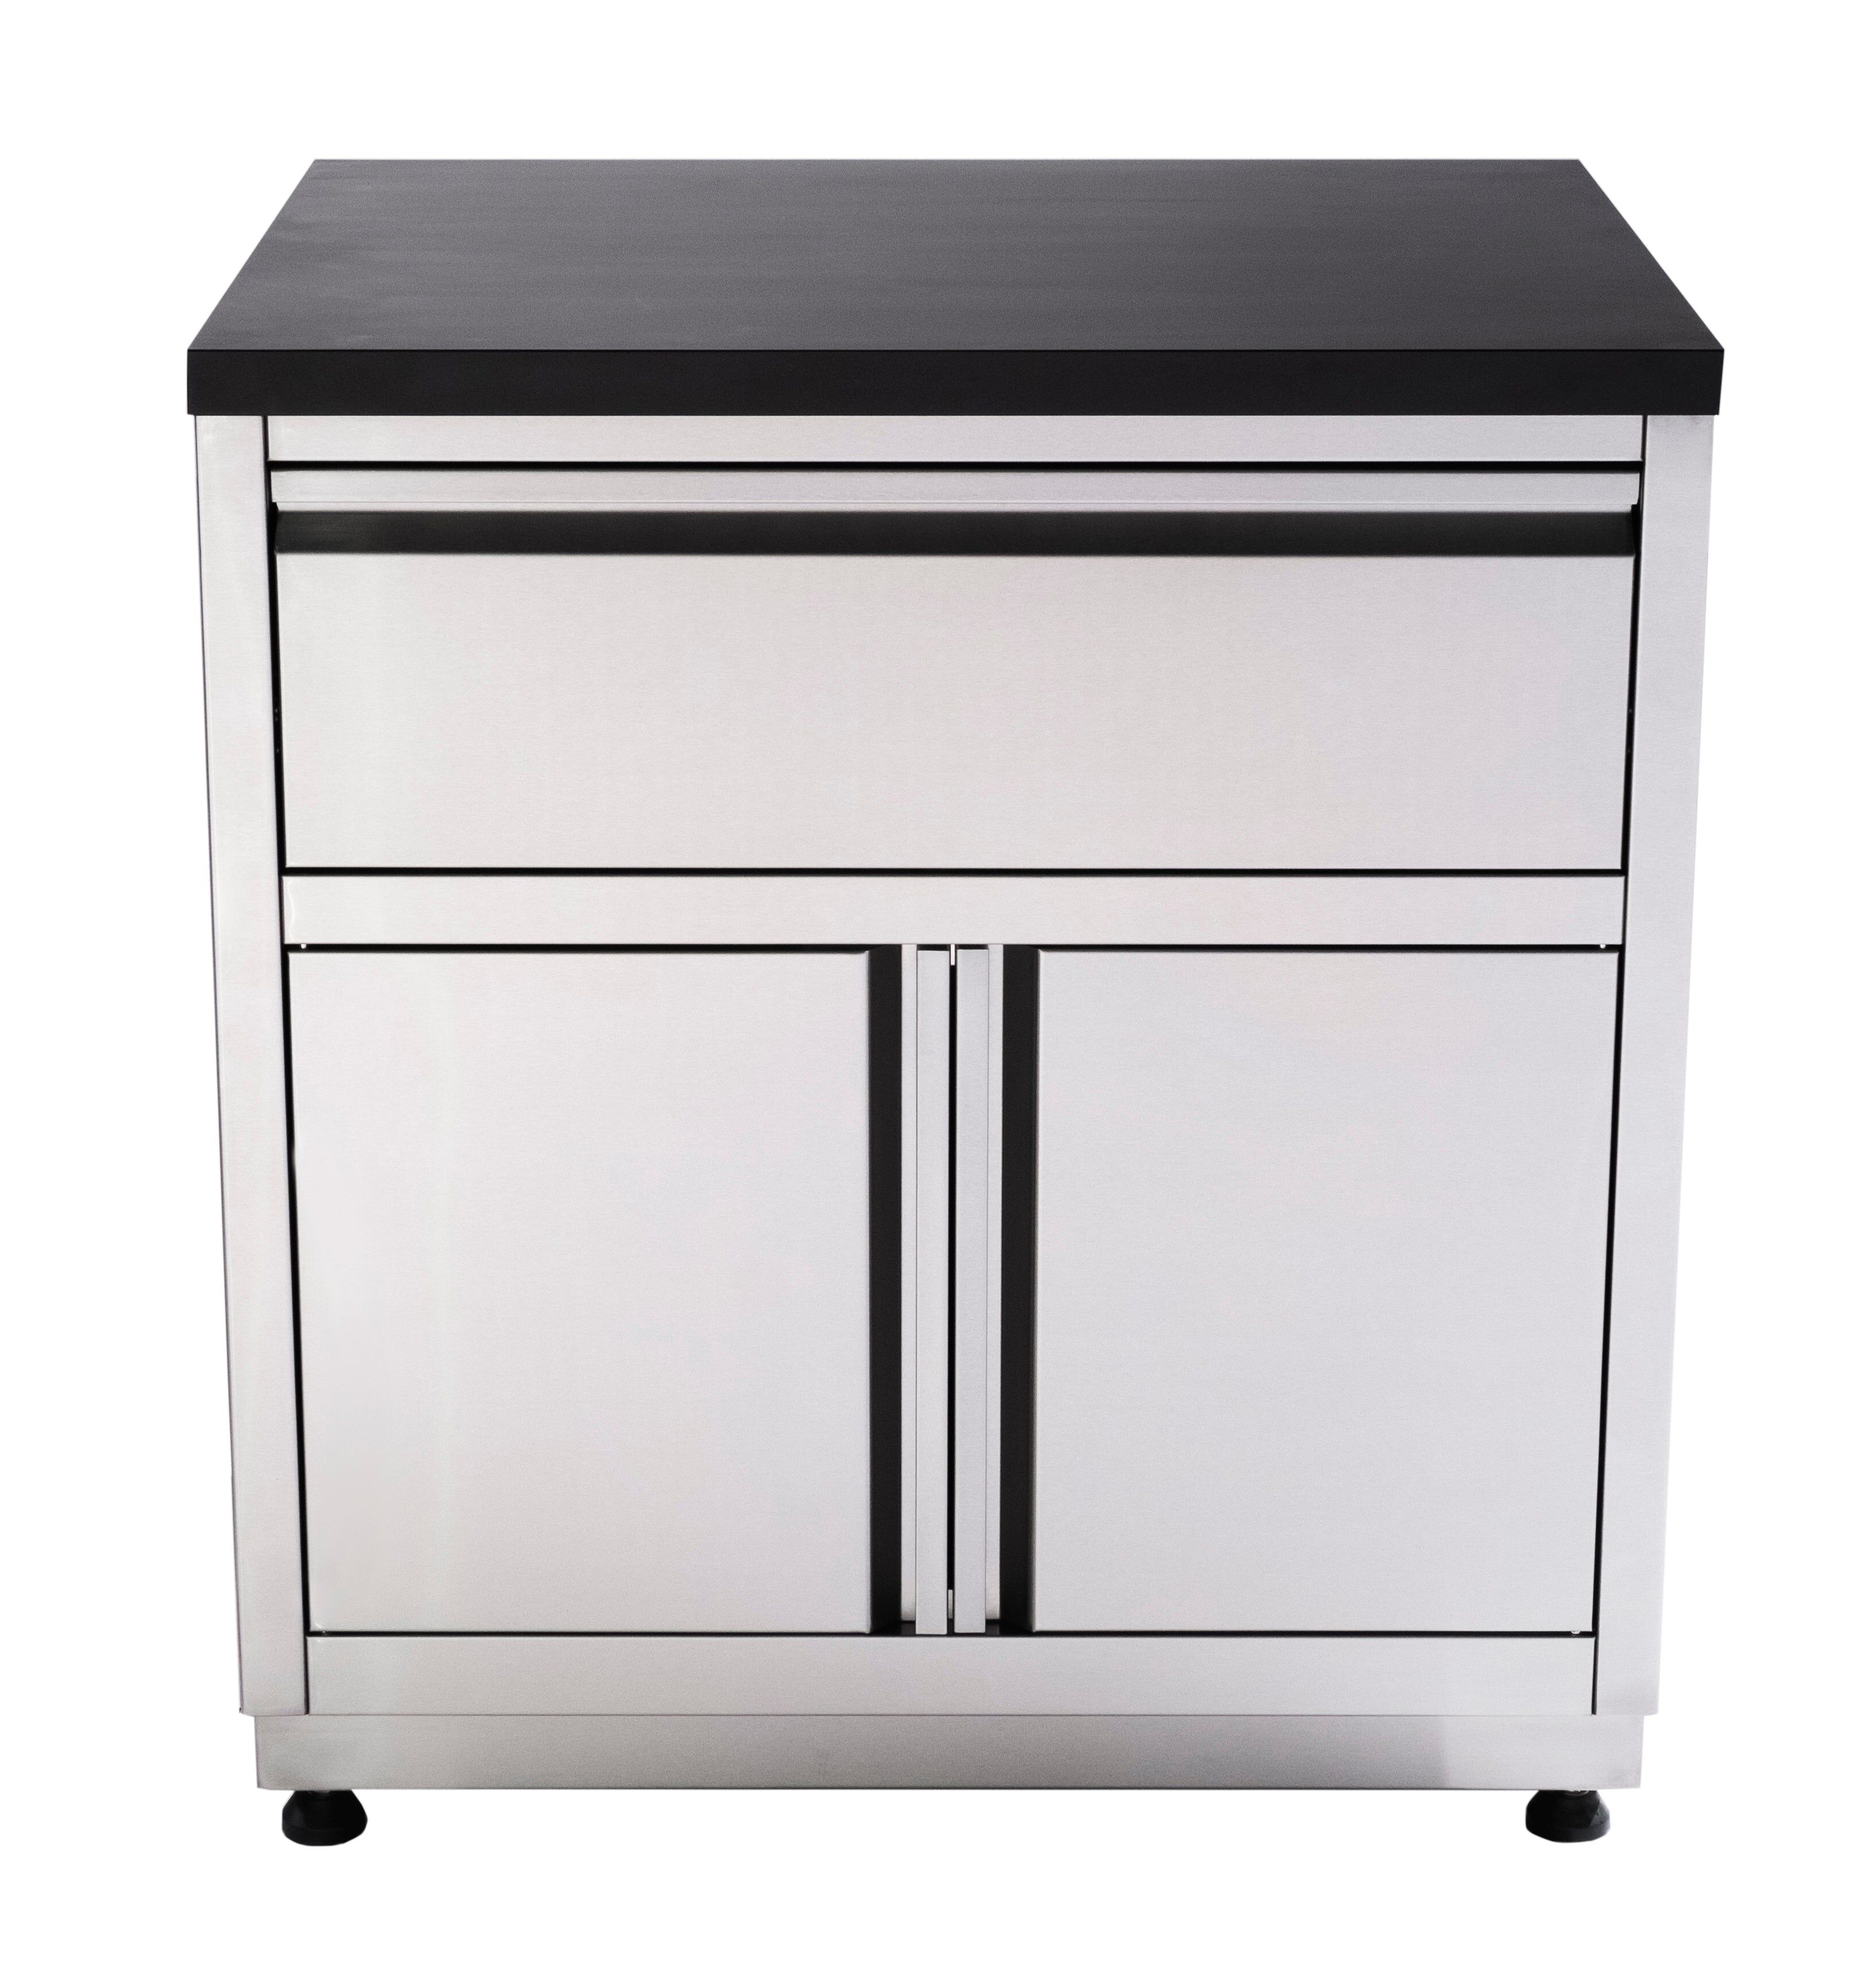 Grilla 31.5" Outdoor Kitchen Cabinet